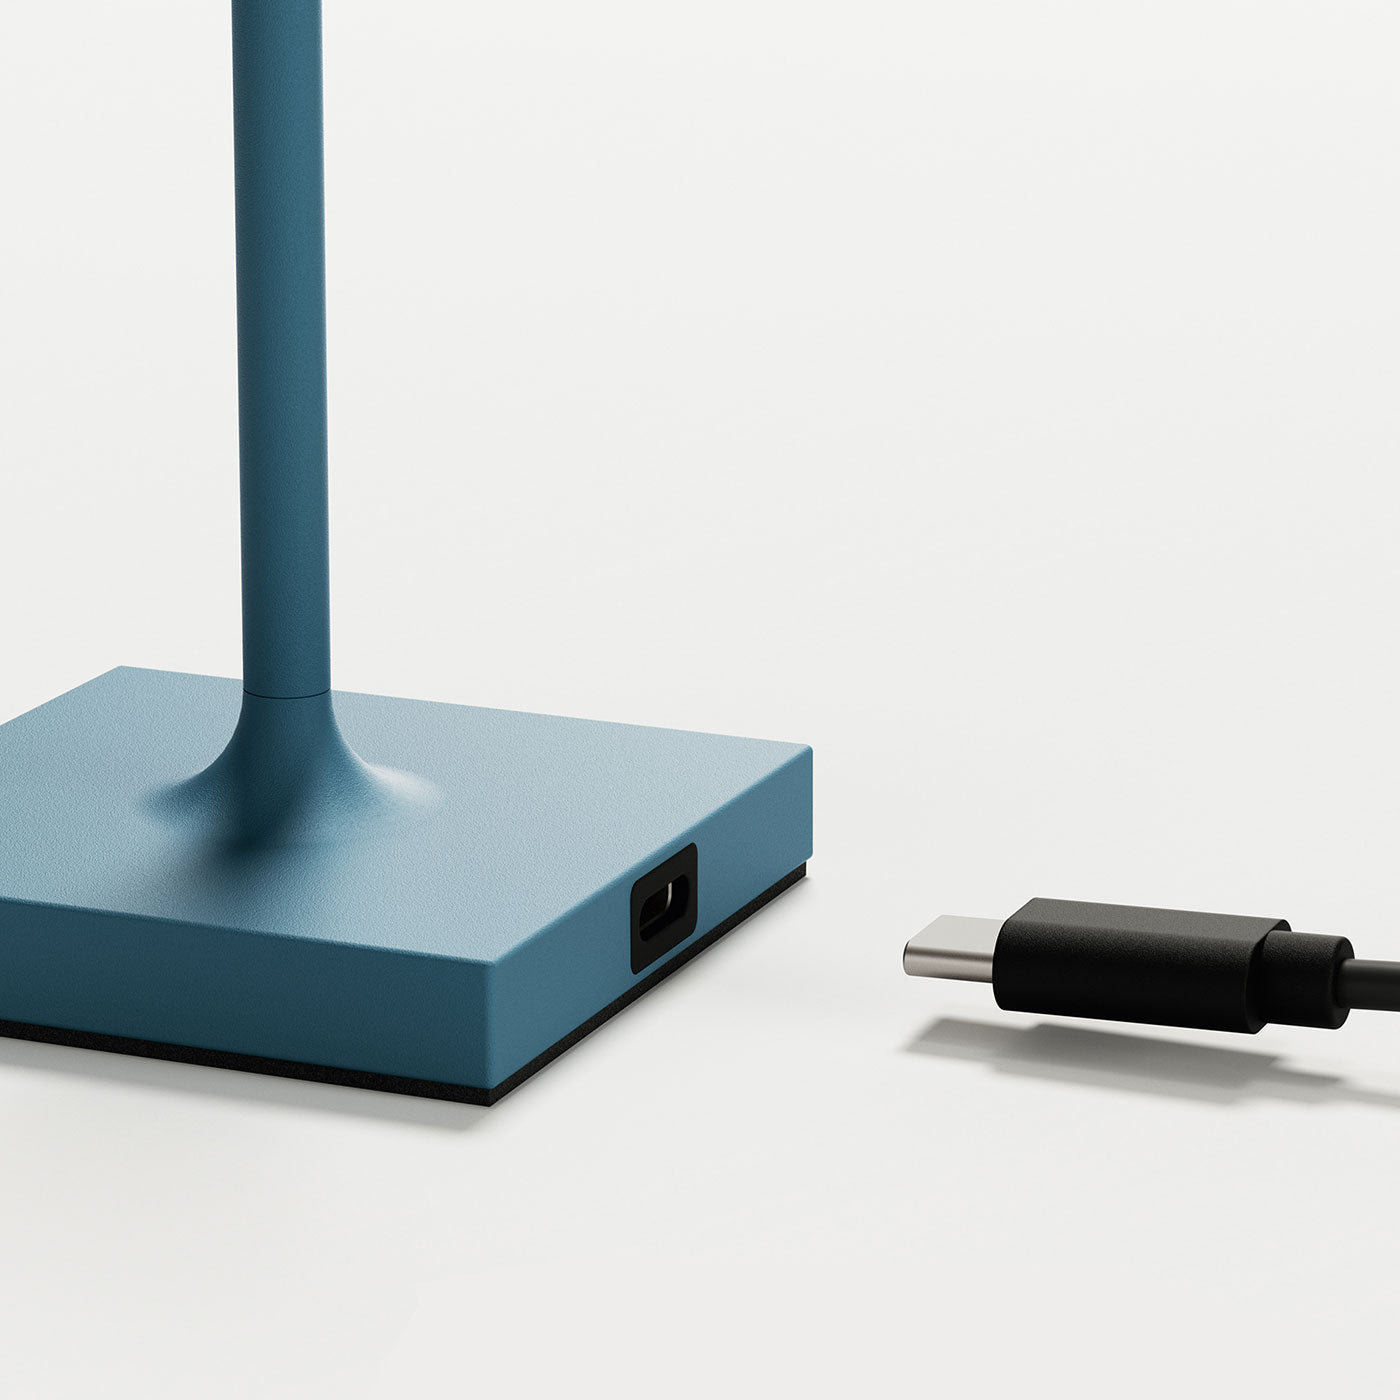 Sigor Nuindie pocket bequem zu laden mit USB-C in #Farbe_Delfinblau